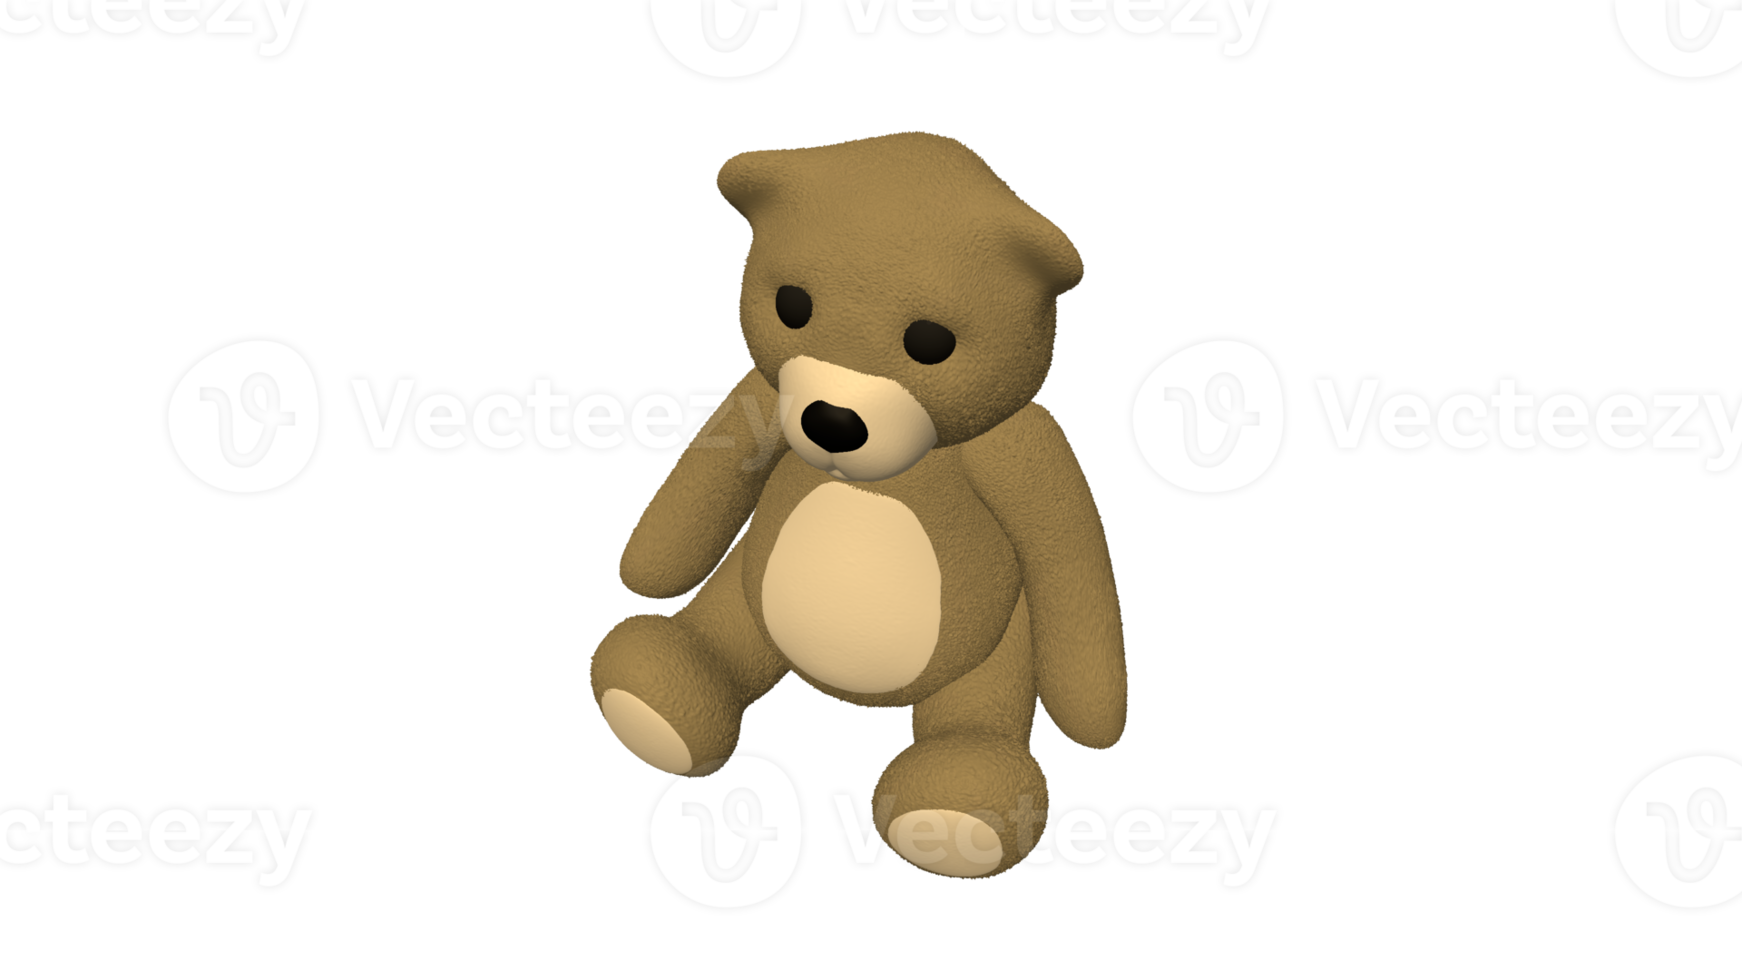 Teddy bear doll cartoon 3d png